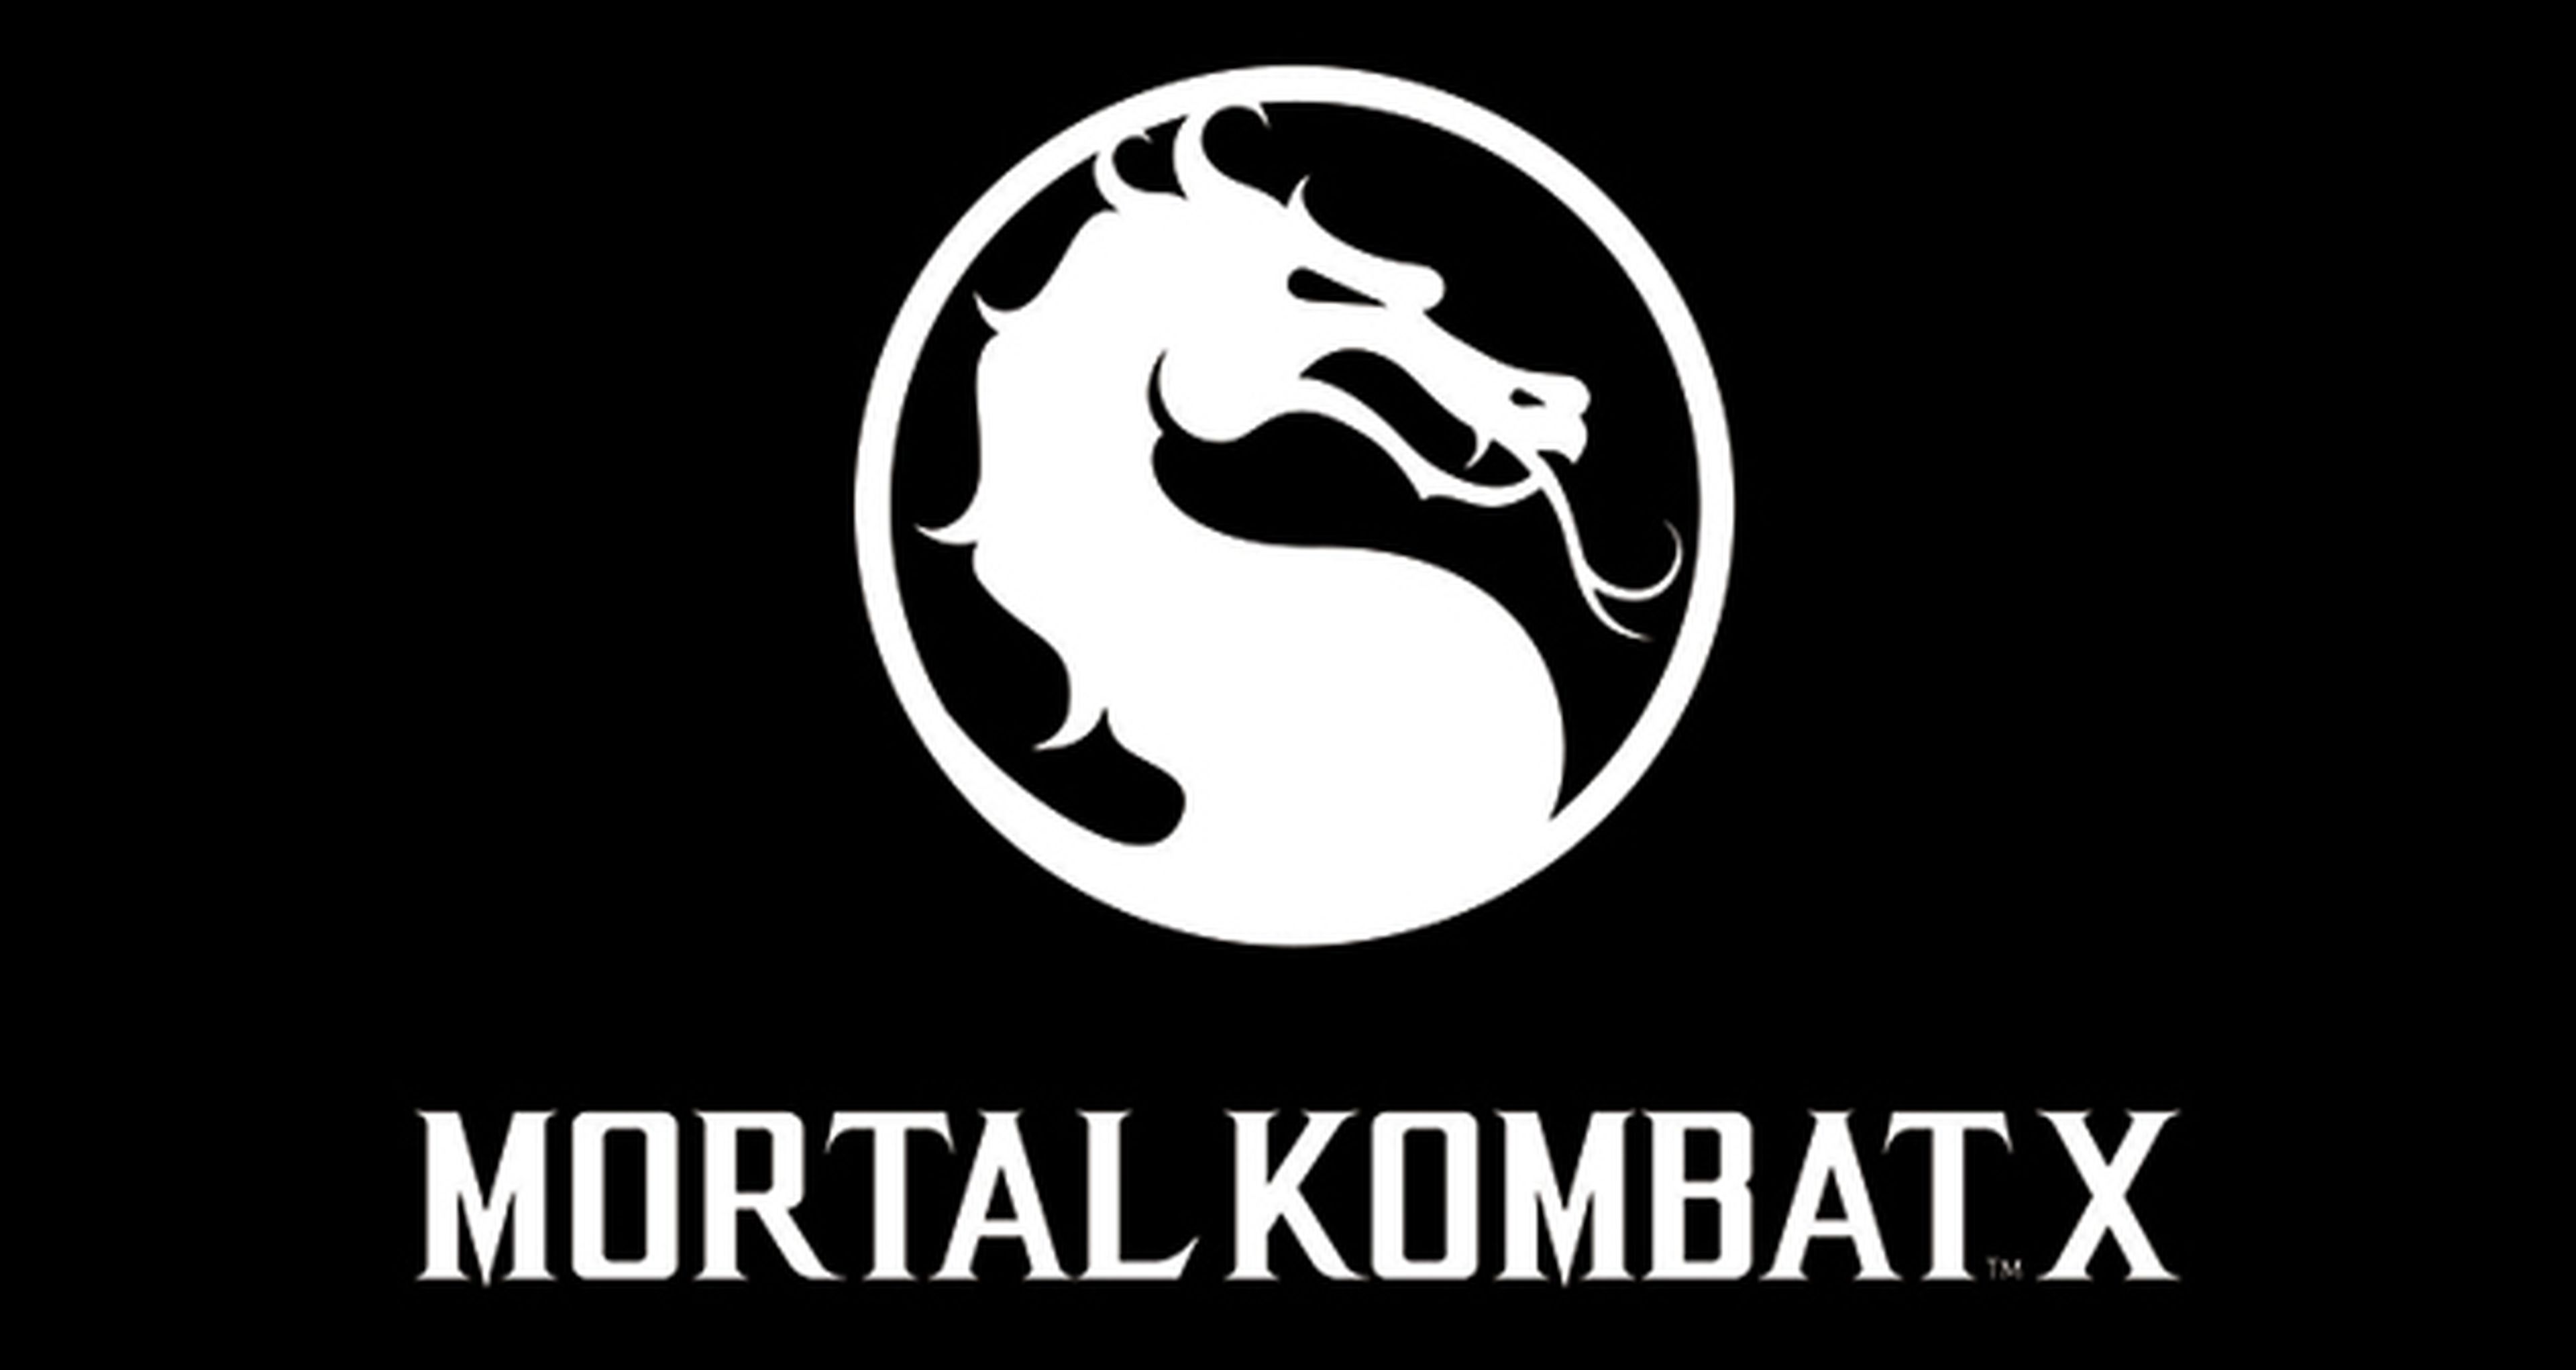 ¿Quiénes serán los próximos personajes de Mortal Kombat X?